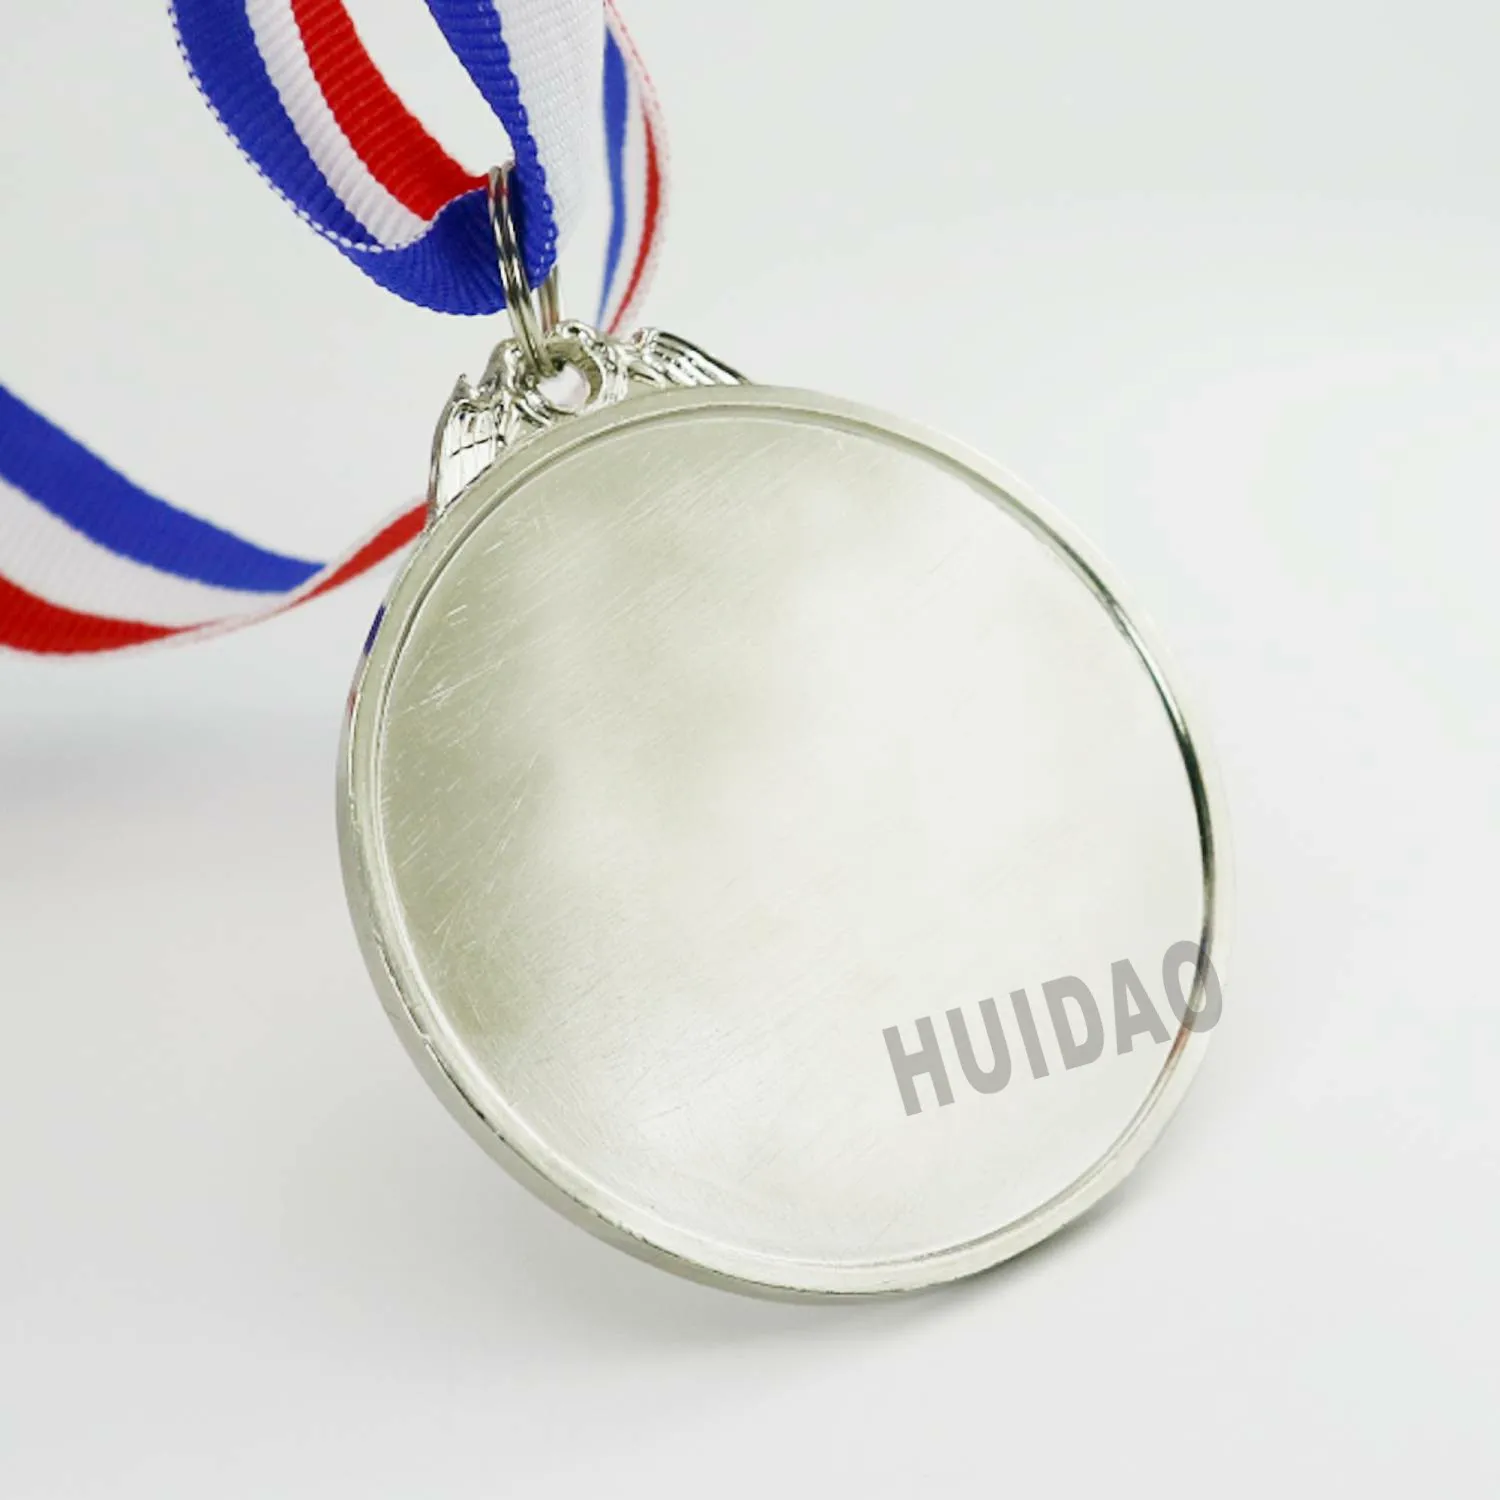 1 шт. диаметр 65 мм бадминтон медаль Badmintion Club Awards серебряный цвет спортивная медаль